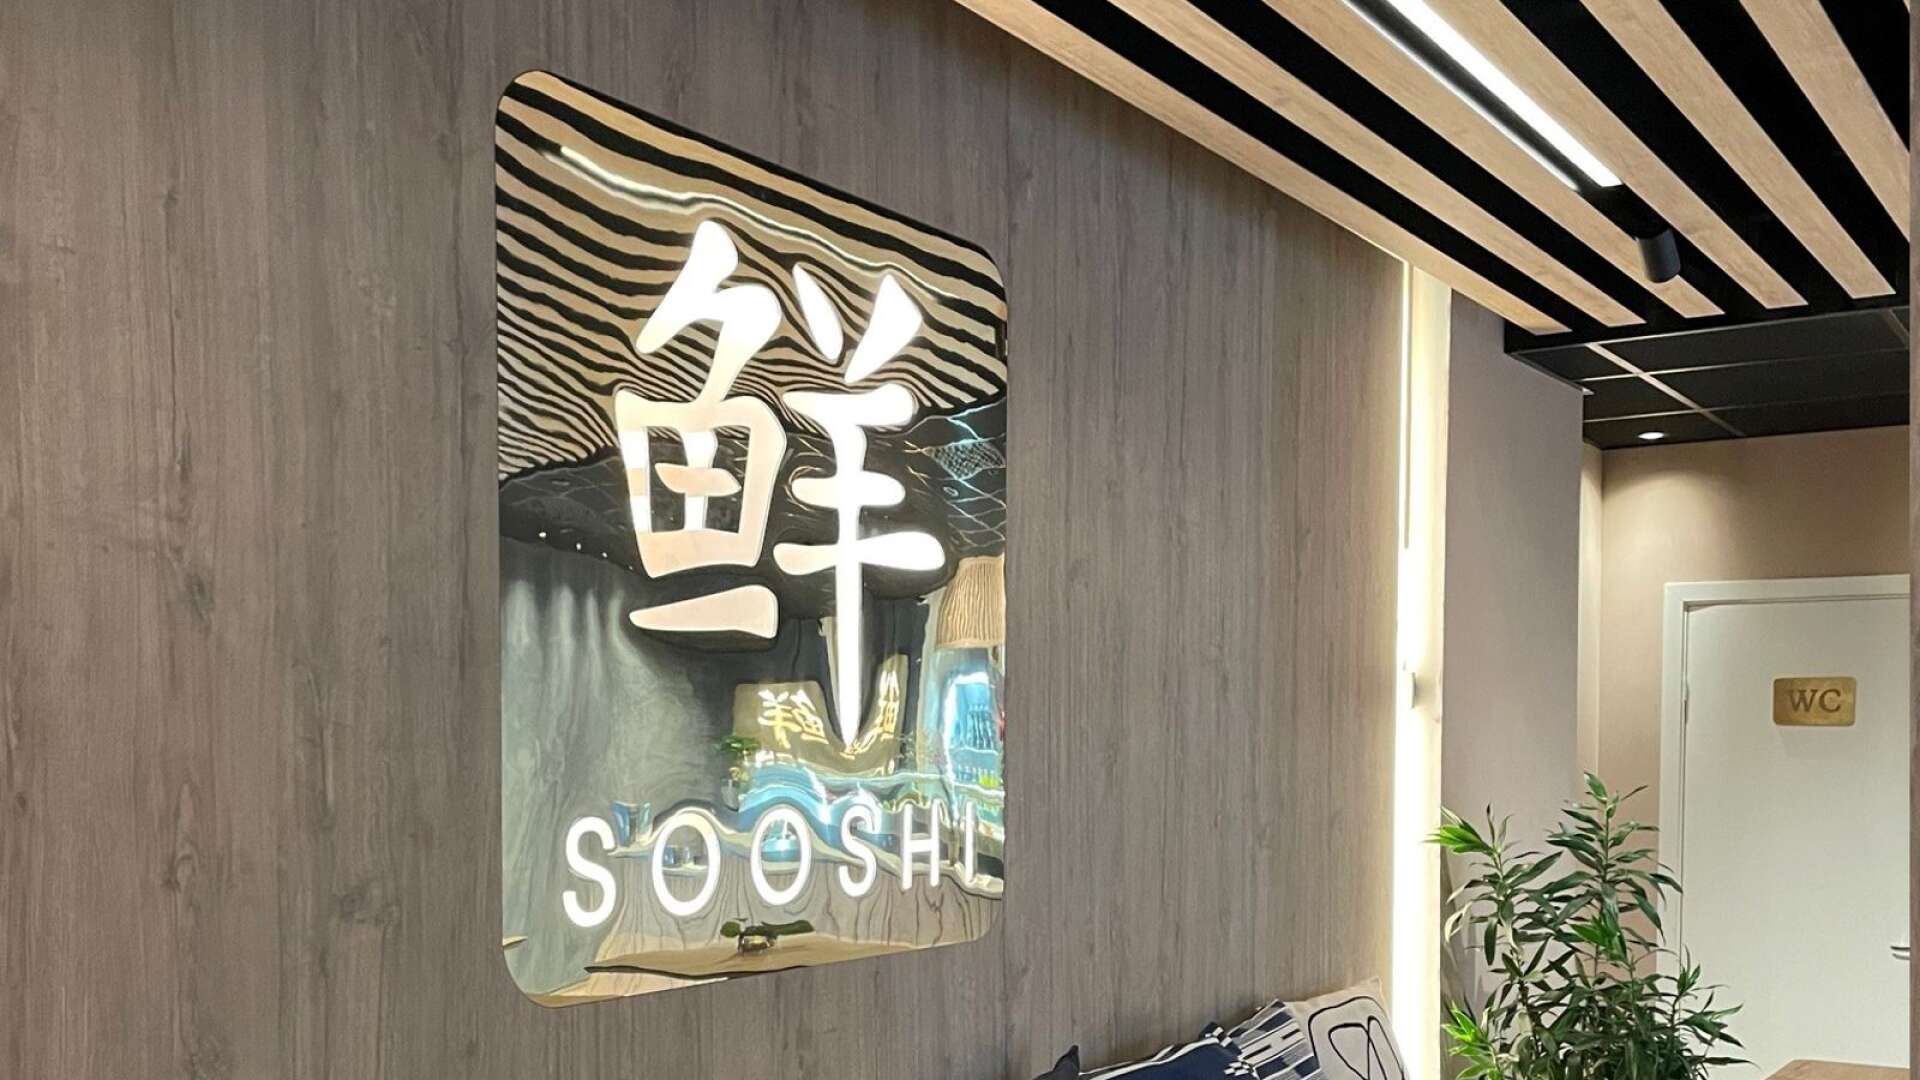 Sooshi öppnade på Östra torggatan under onsdagen. Restaurangen bygger på det japanska uttrycket &quot;wabisabi&quot;.